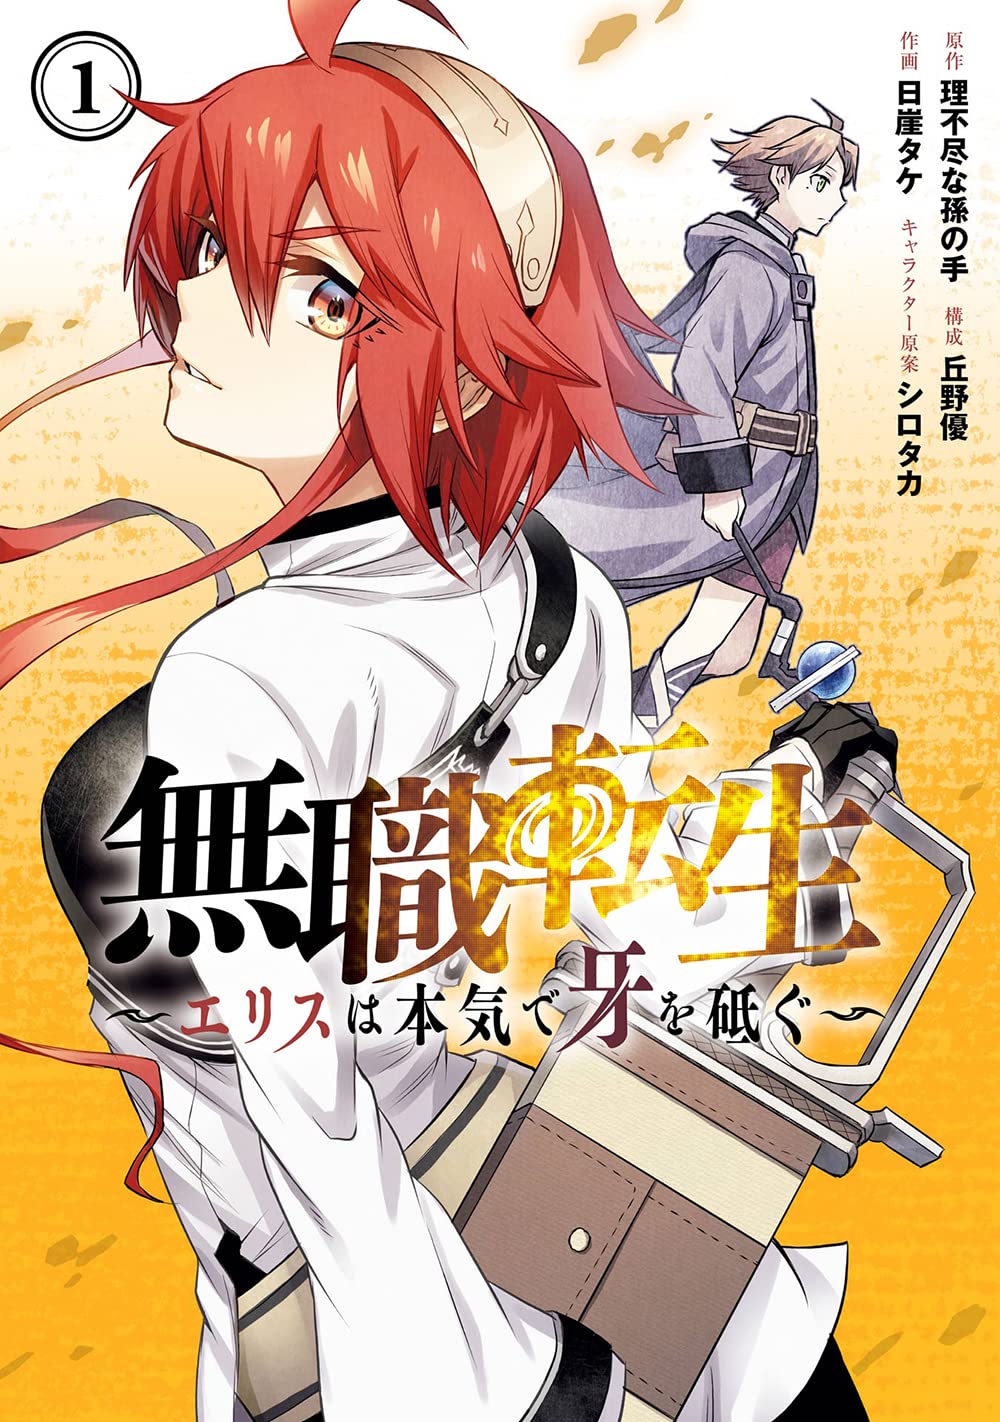 Mushoku Tensei Jobless Reincarnation Light Novel Set All Vol.1-26